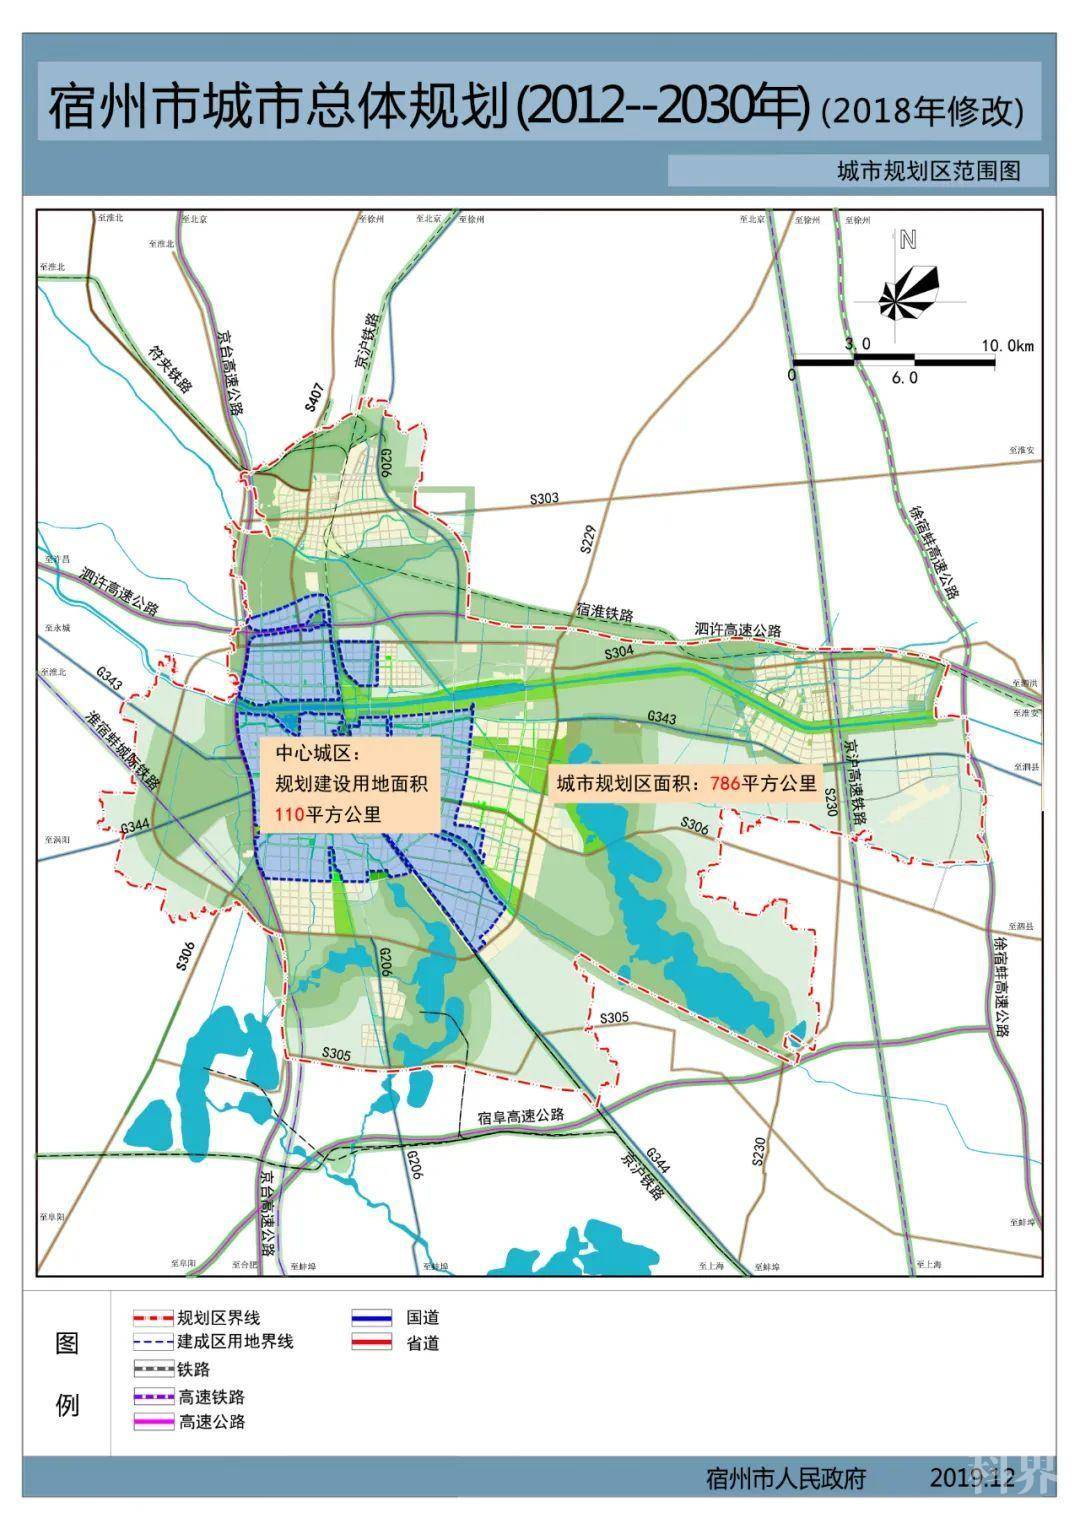 一,《宿州市城市总体规划(2012